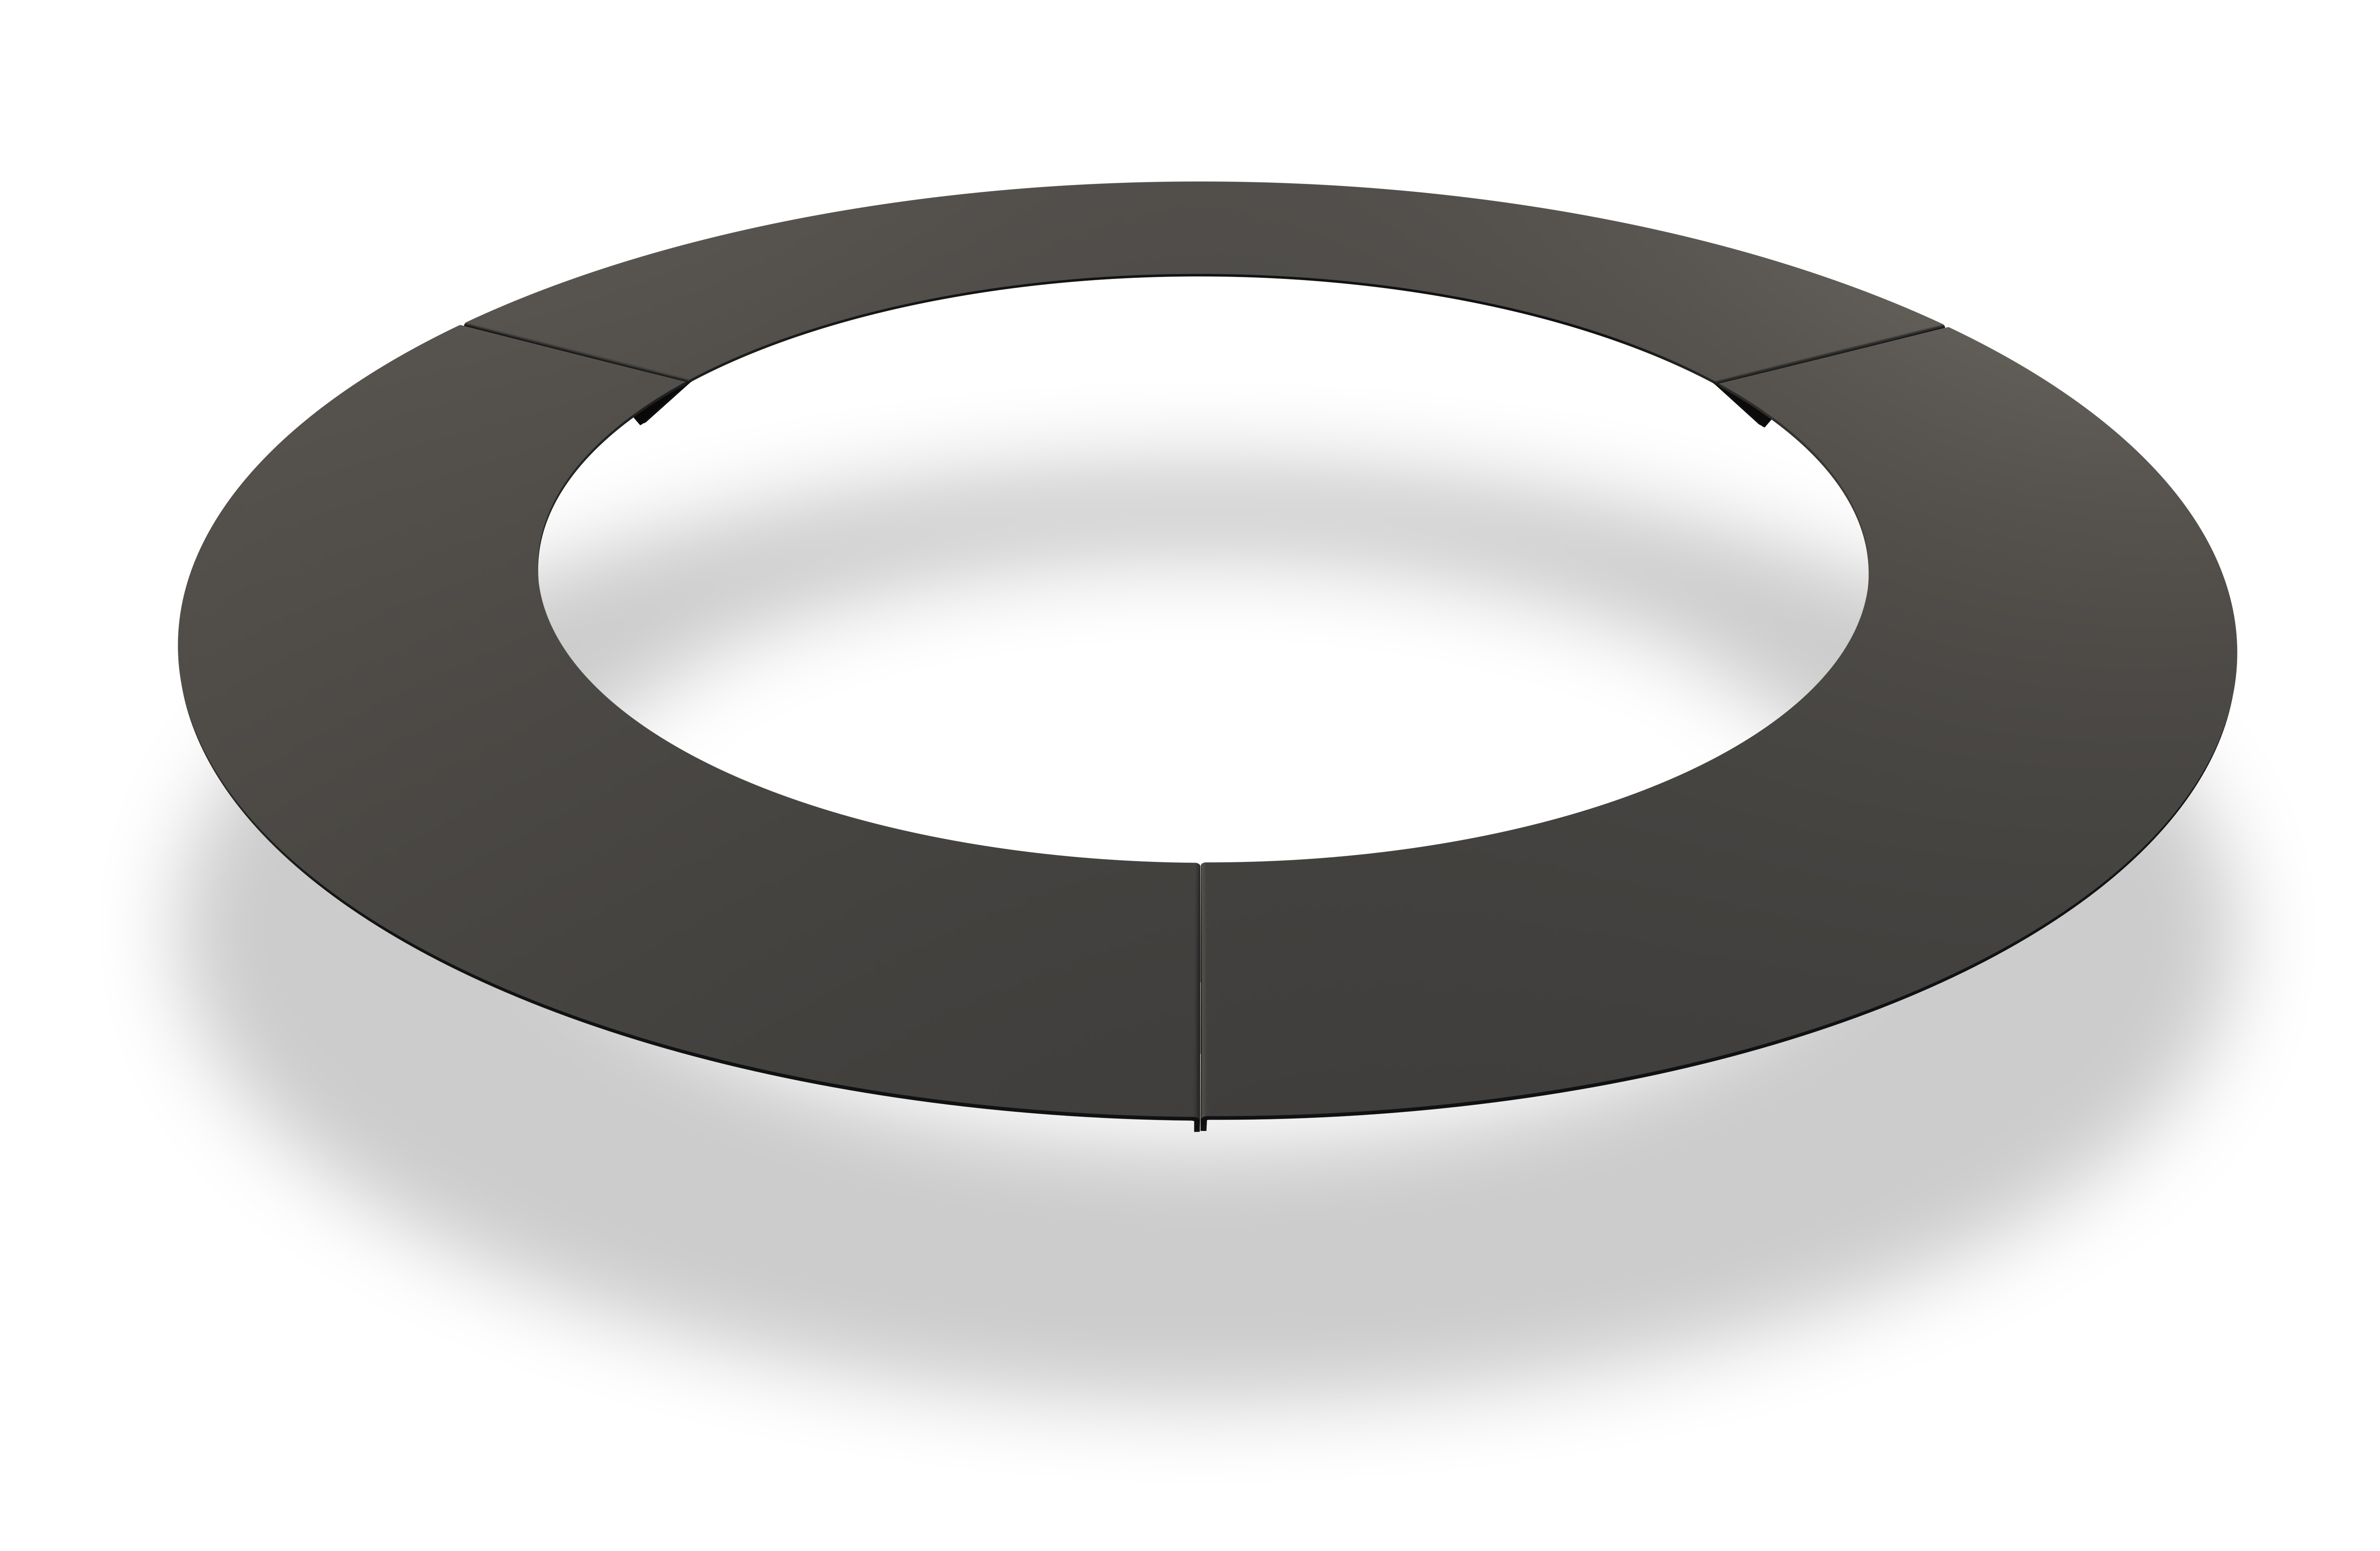 Raseneinfassung „Robot Mower Ring“ 30/60 cm, Graphit dunkel - zum Schließen ins Bild klicken